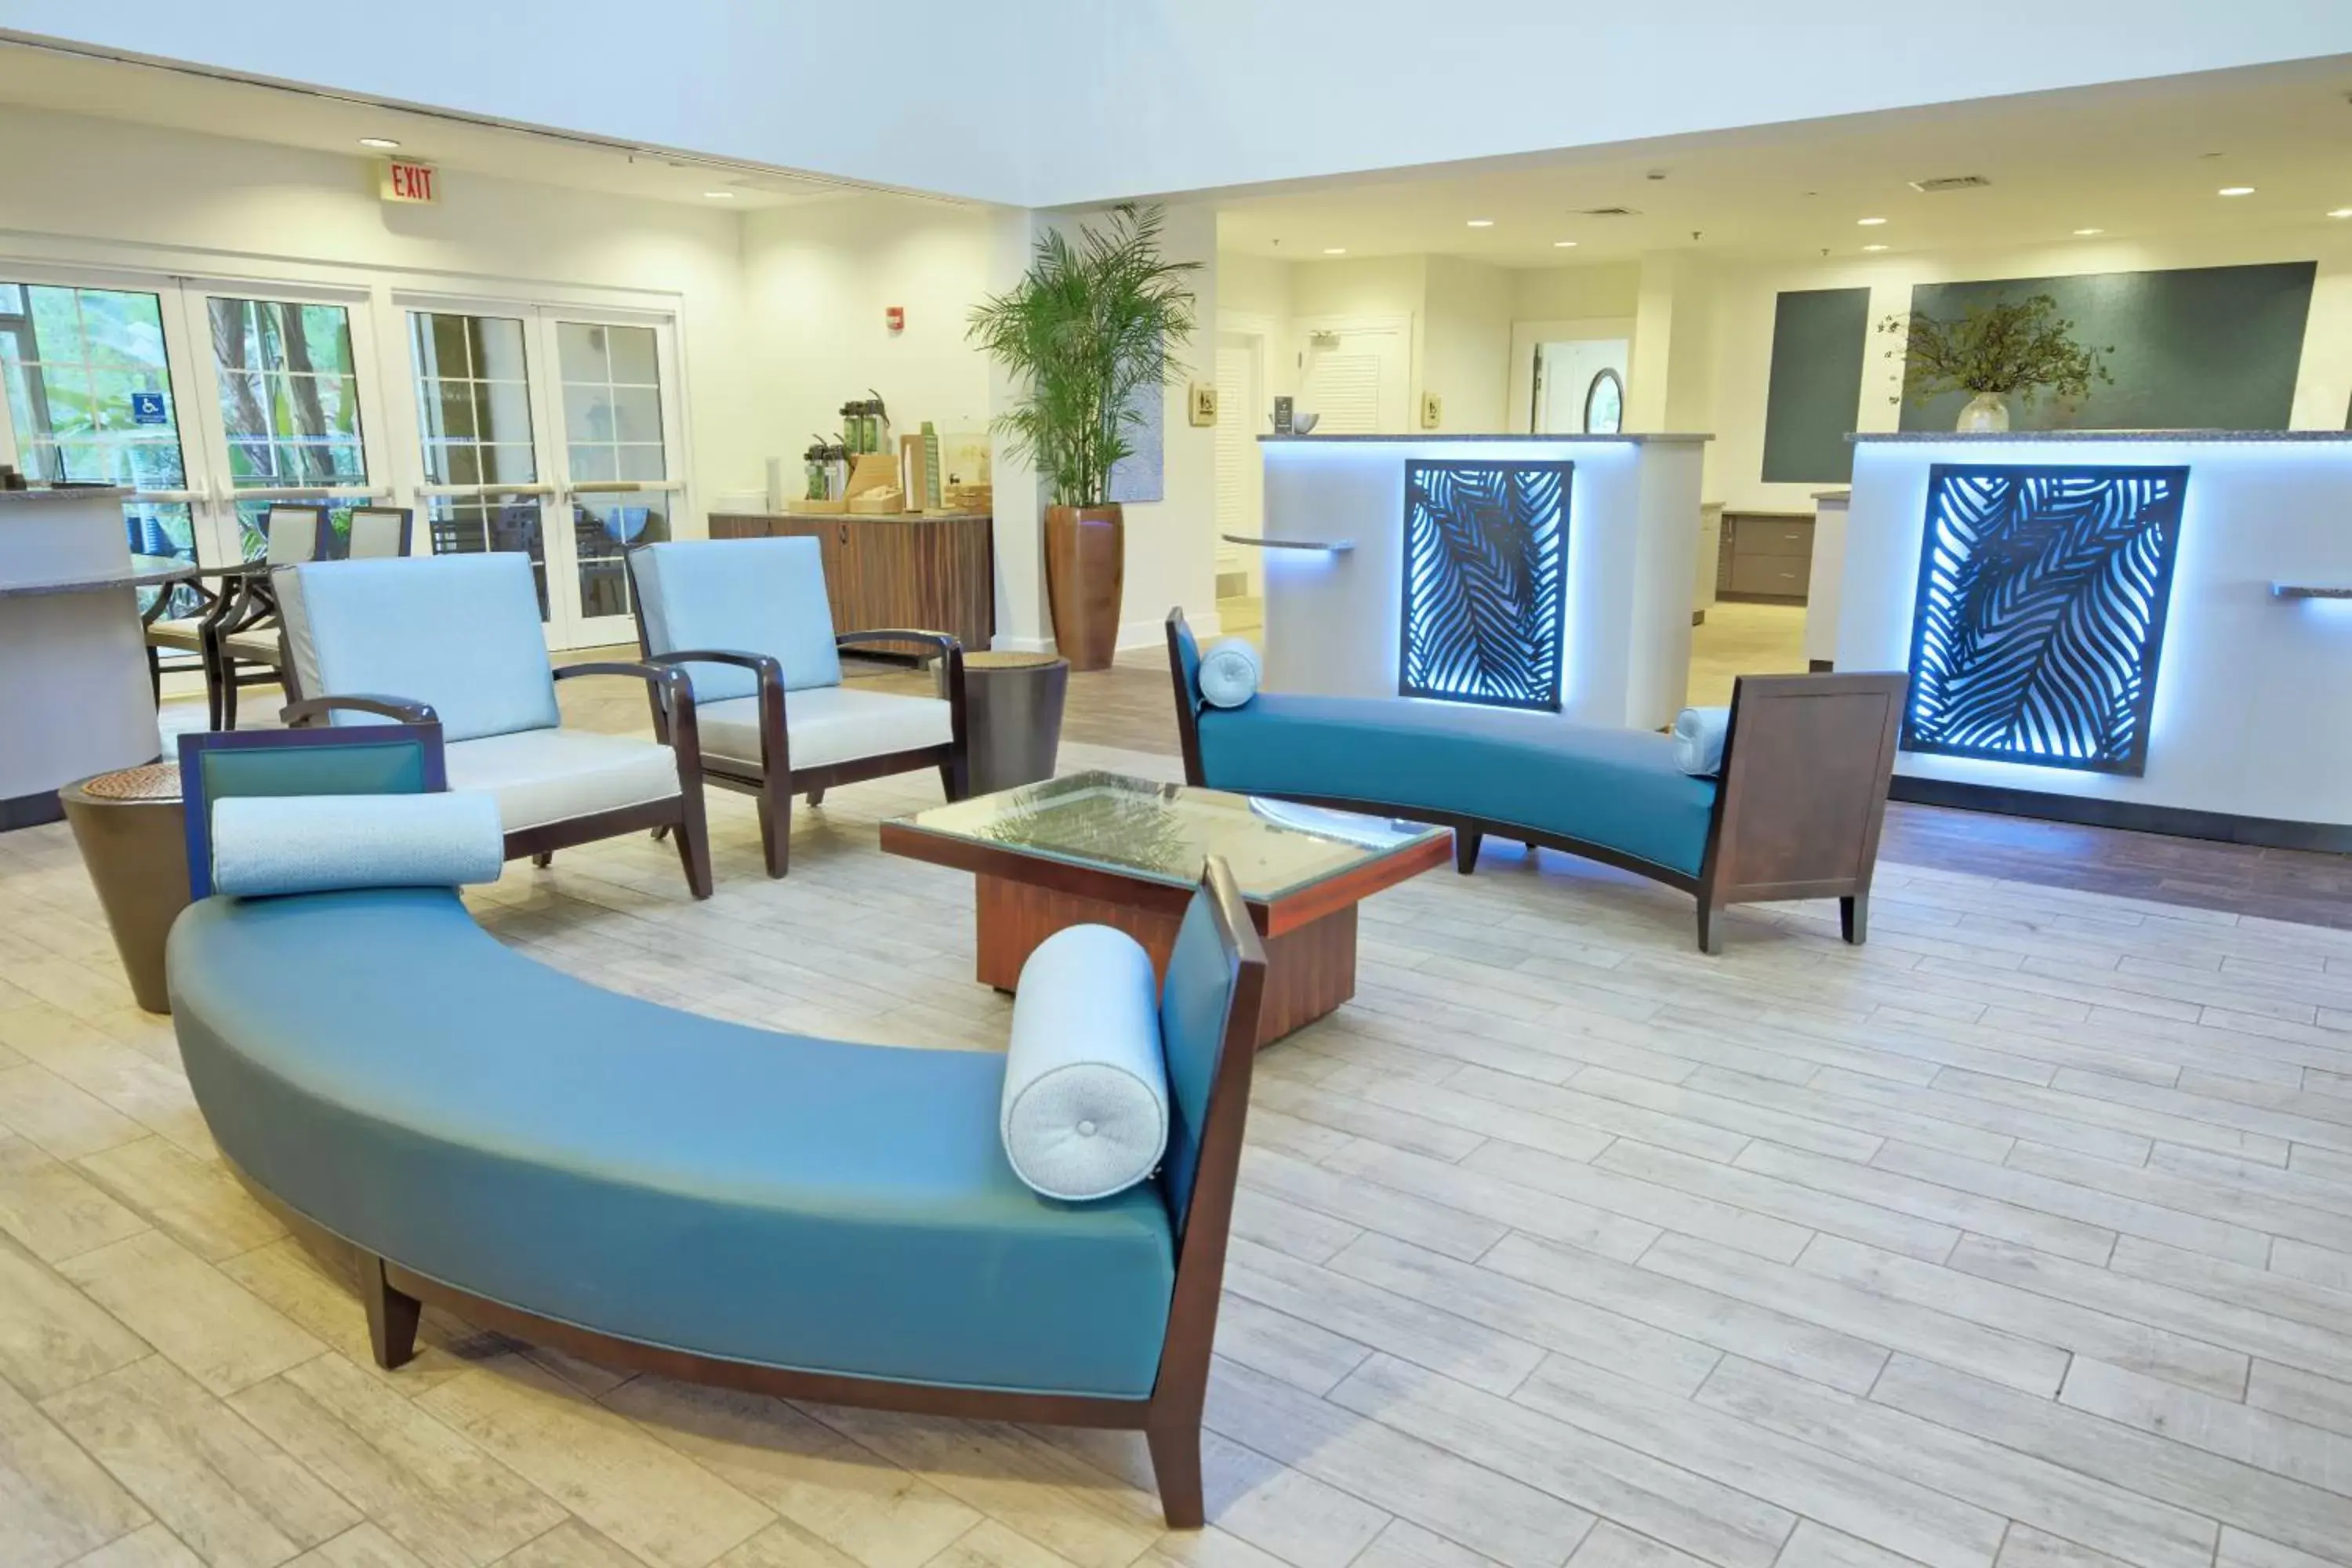 Lobby or reception, Seating Area in Club Wyndham Cypress Palms